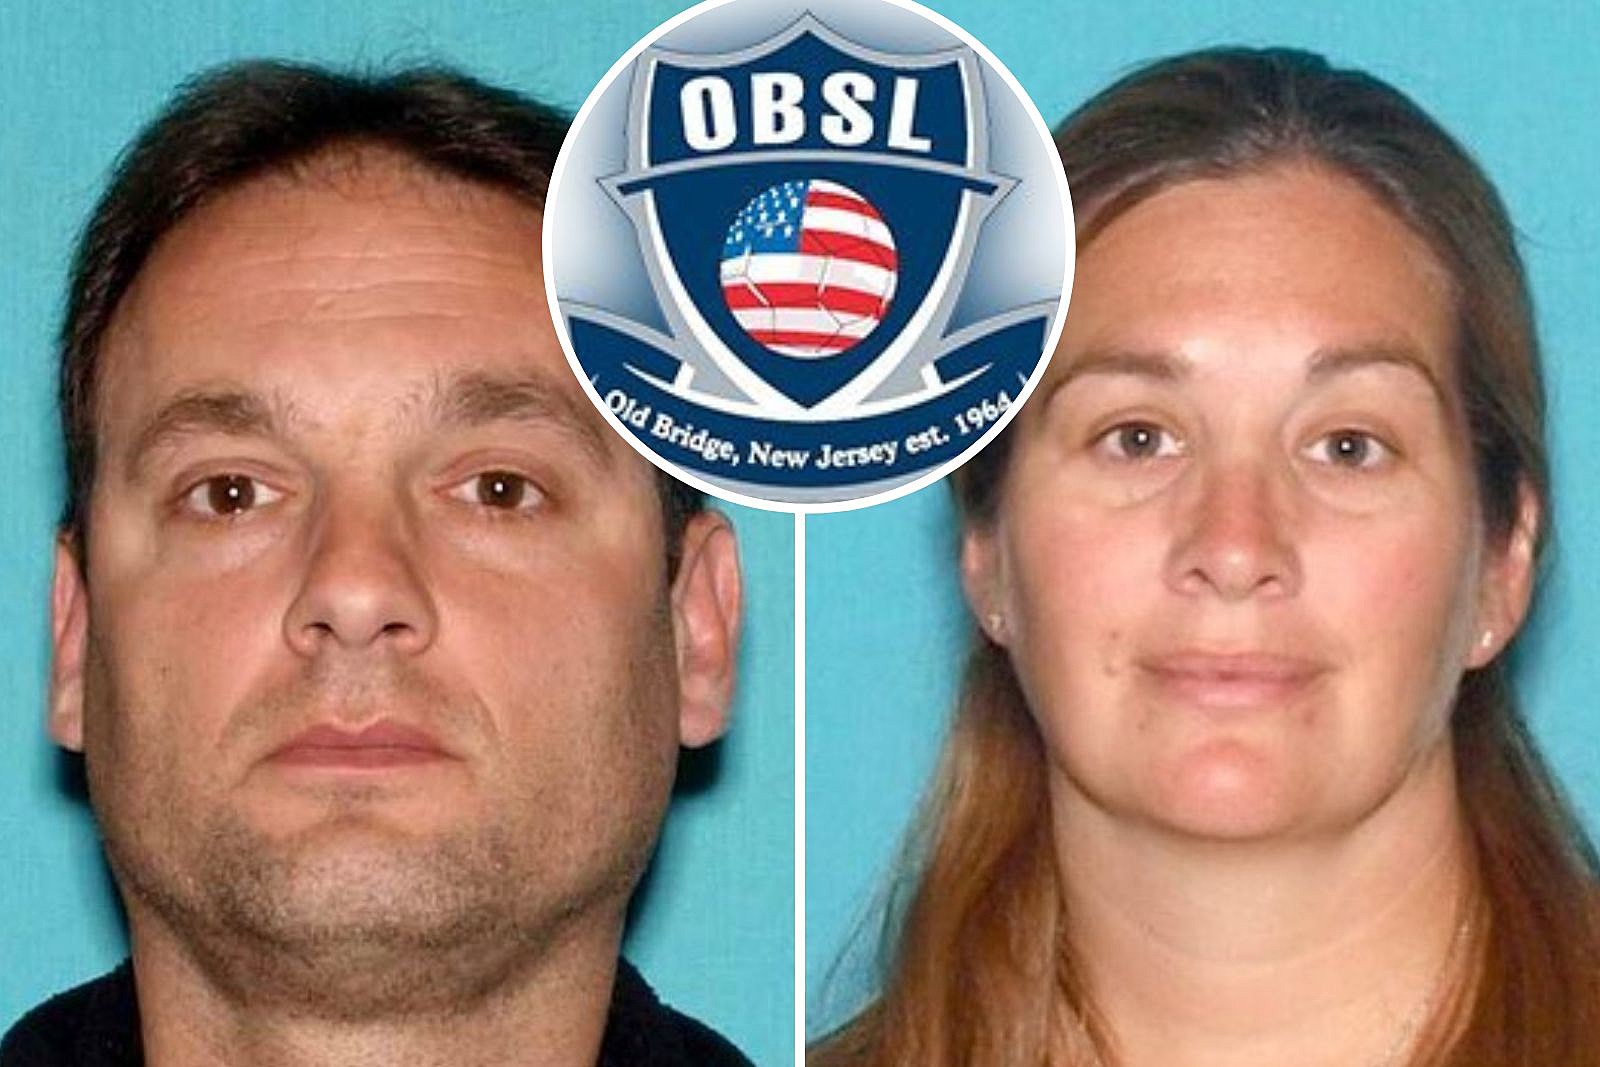 Couple spent stolen soccer league funds on trip, bills, cops